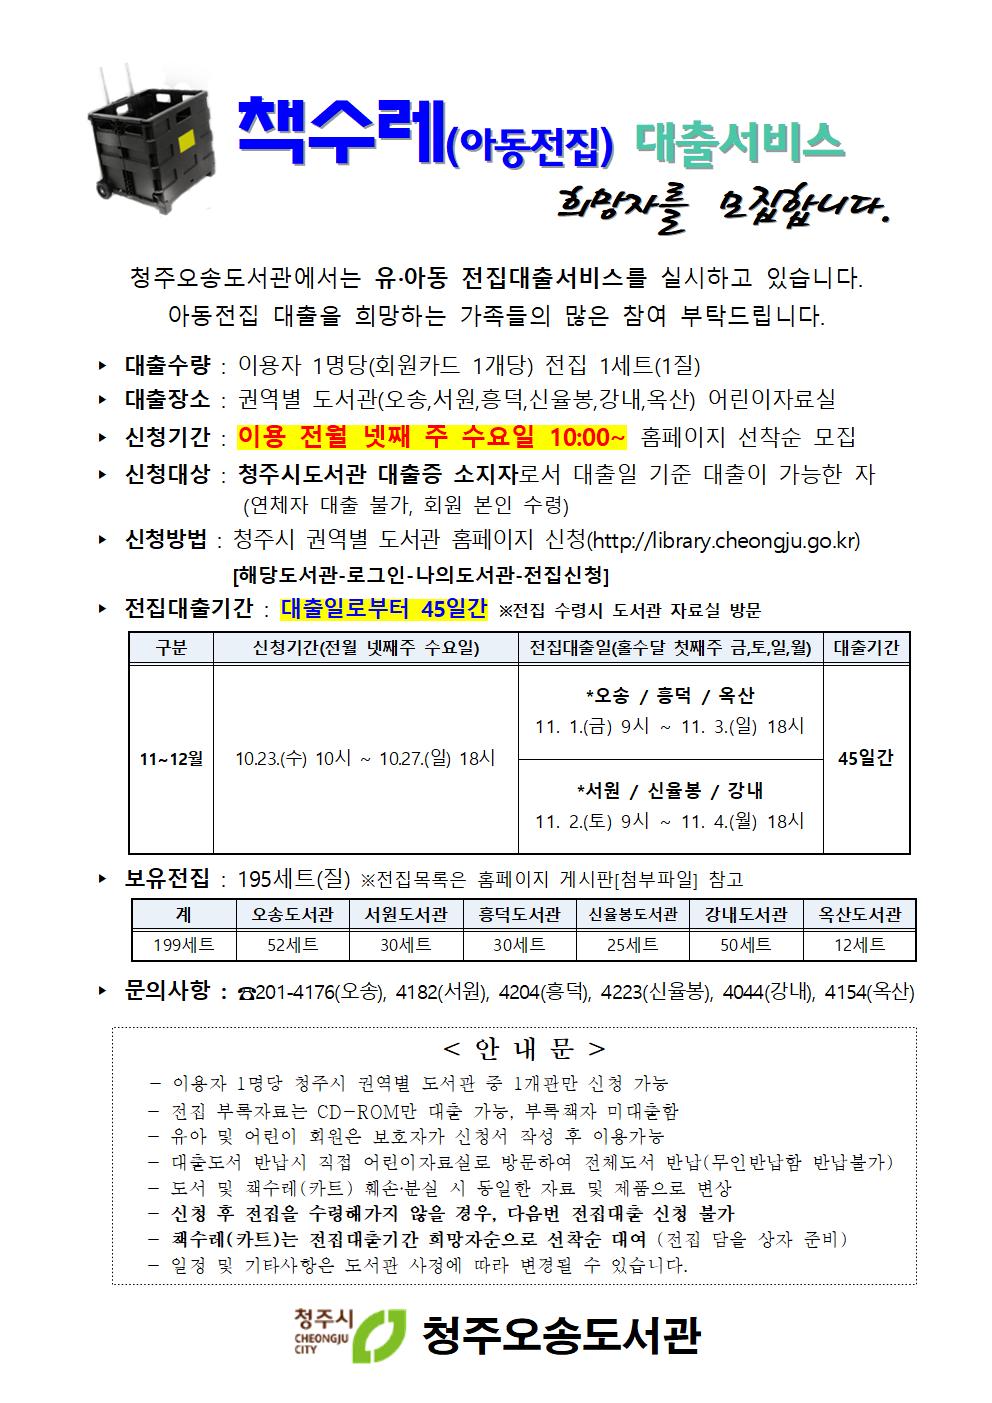 [오송·서원·흥덕·신율봉·강내·옥산도서관]2019년 11-12월 전집대출 신청자 모집